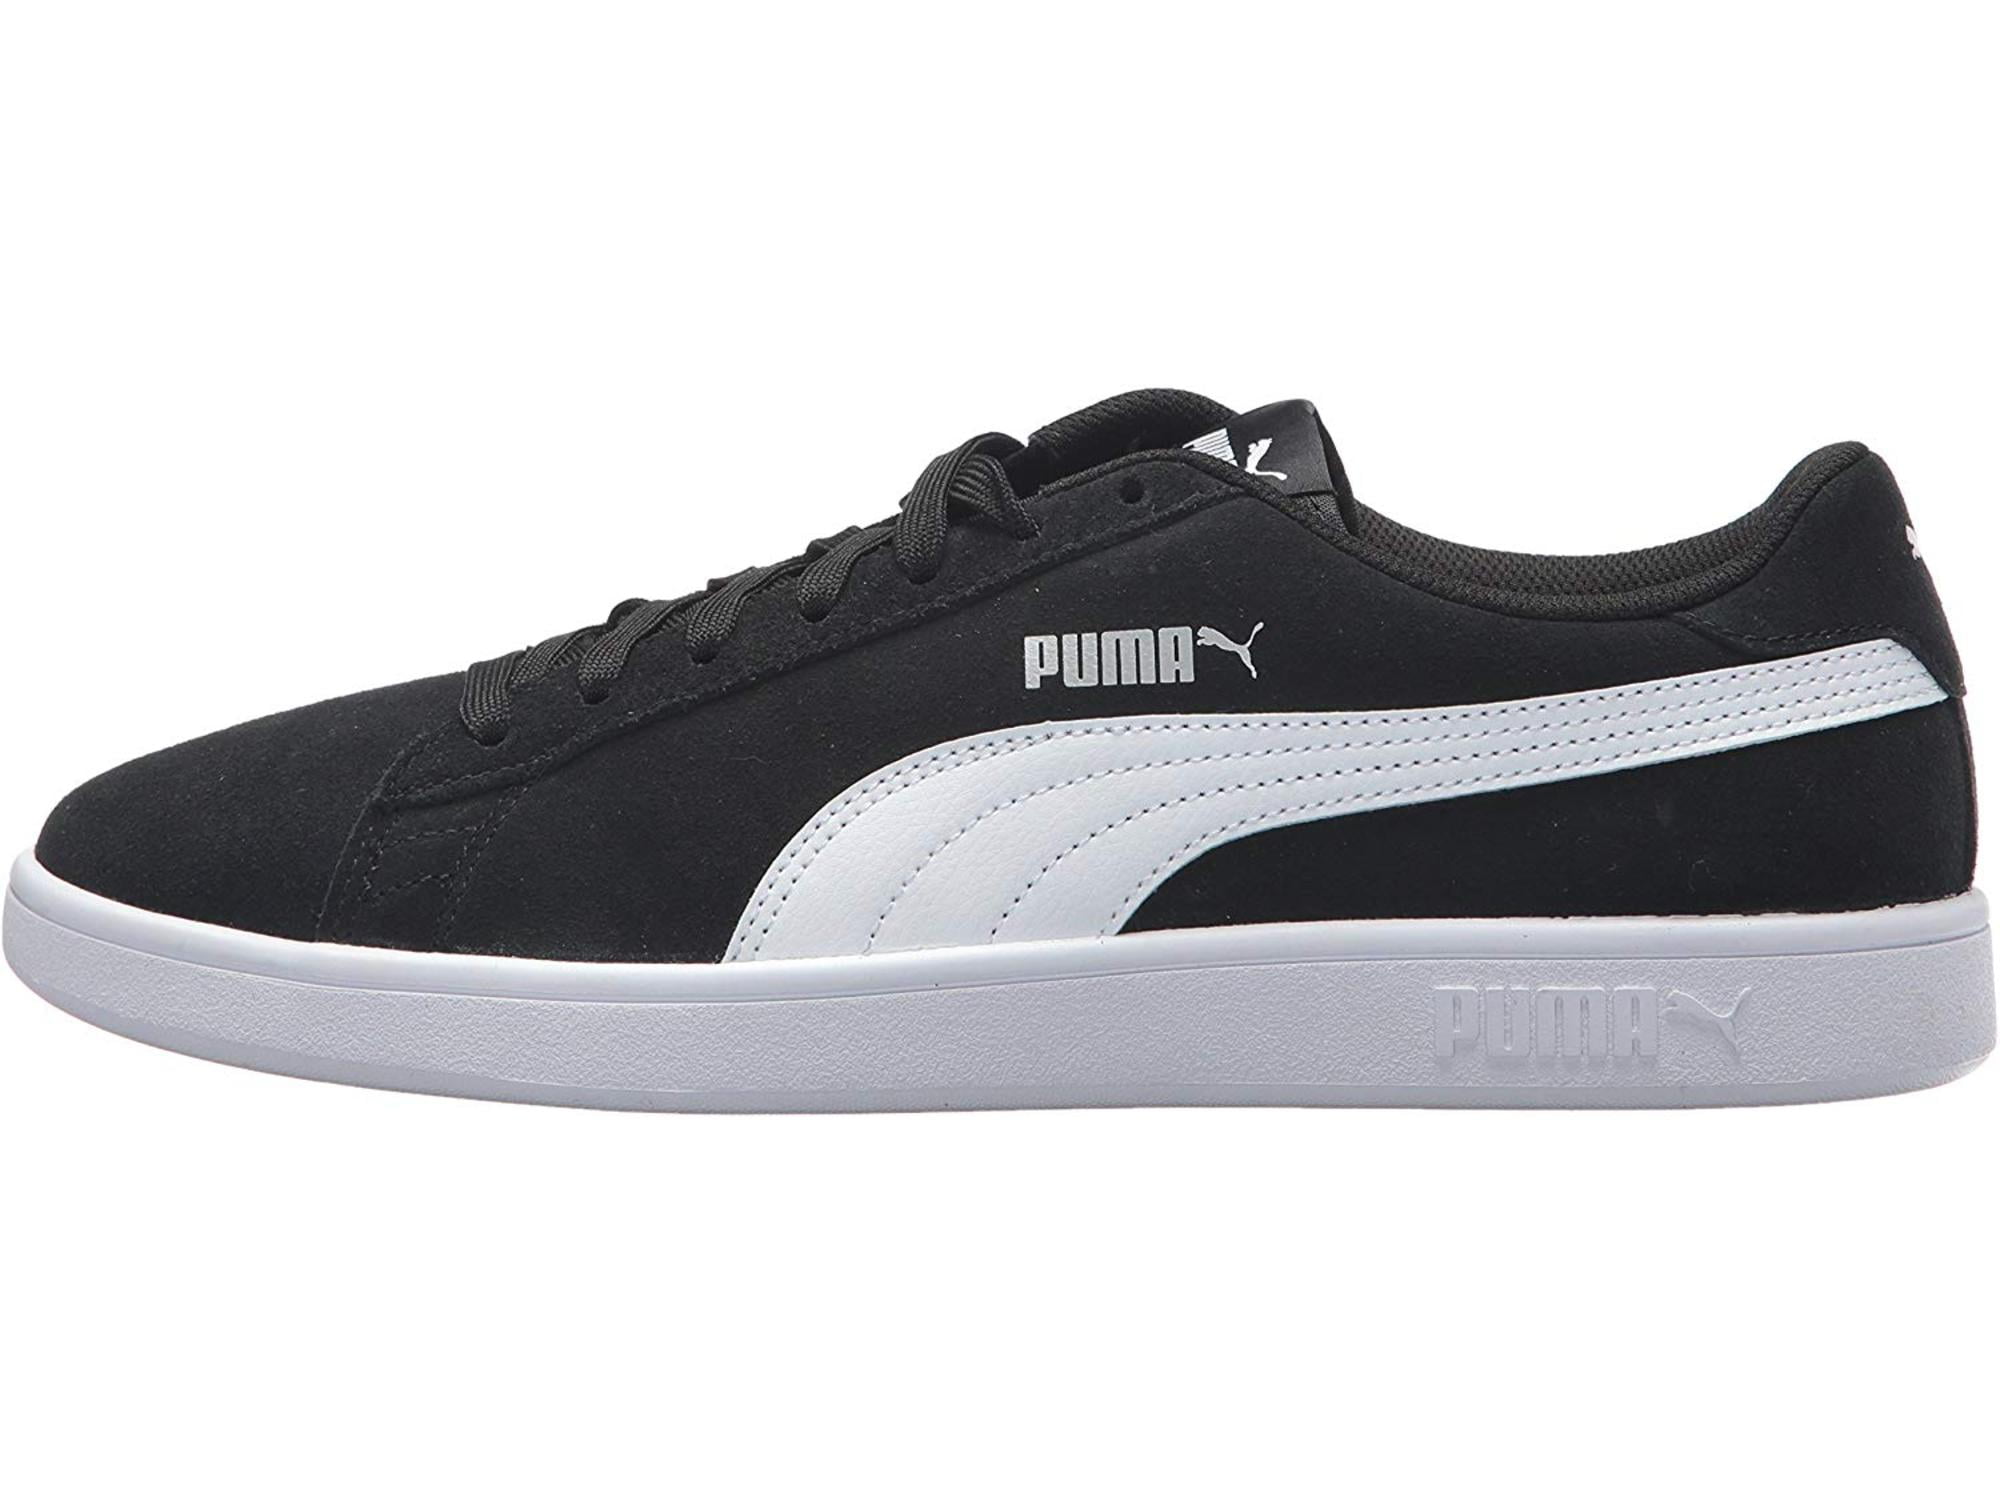 PUMA - PUMA Men's Smash V2 Sneaker, Black, Size 11.0 rx4T - Walmart.com ...